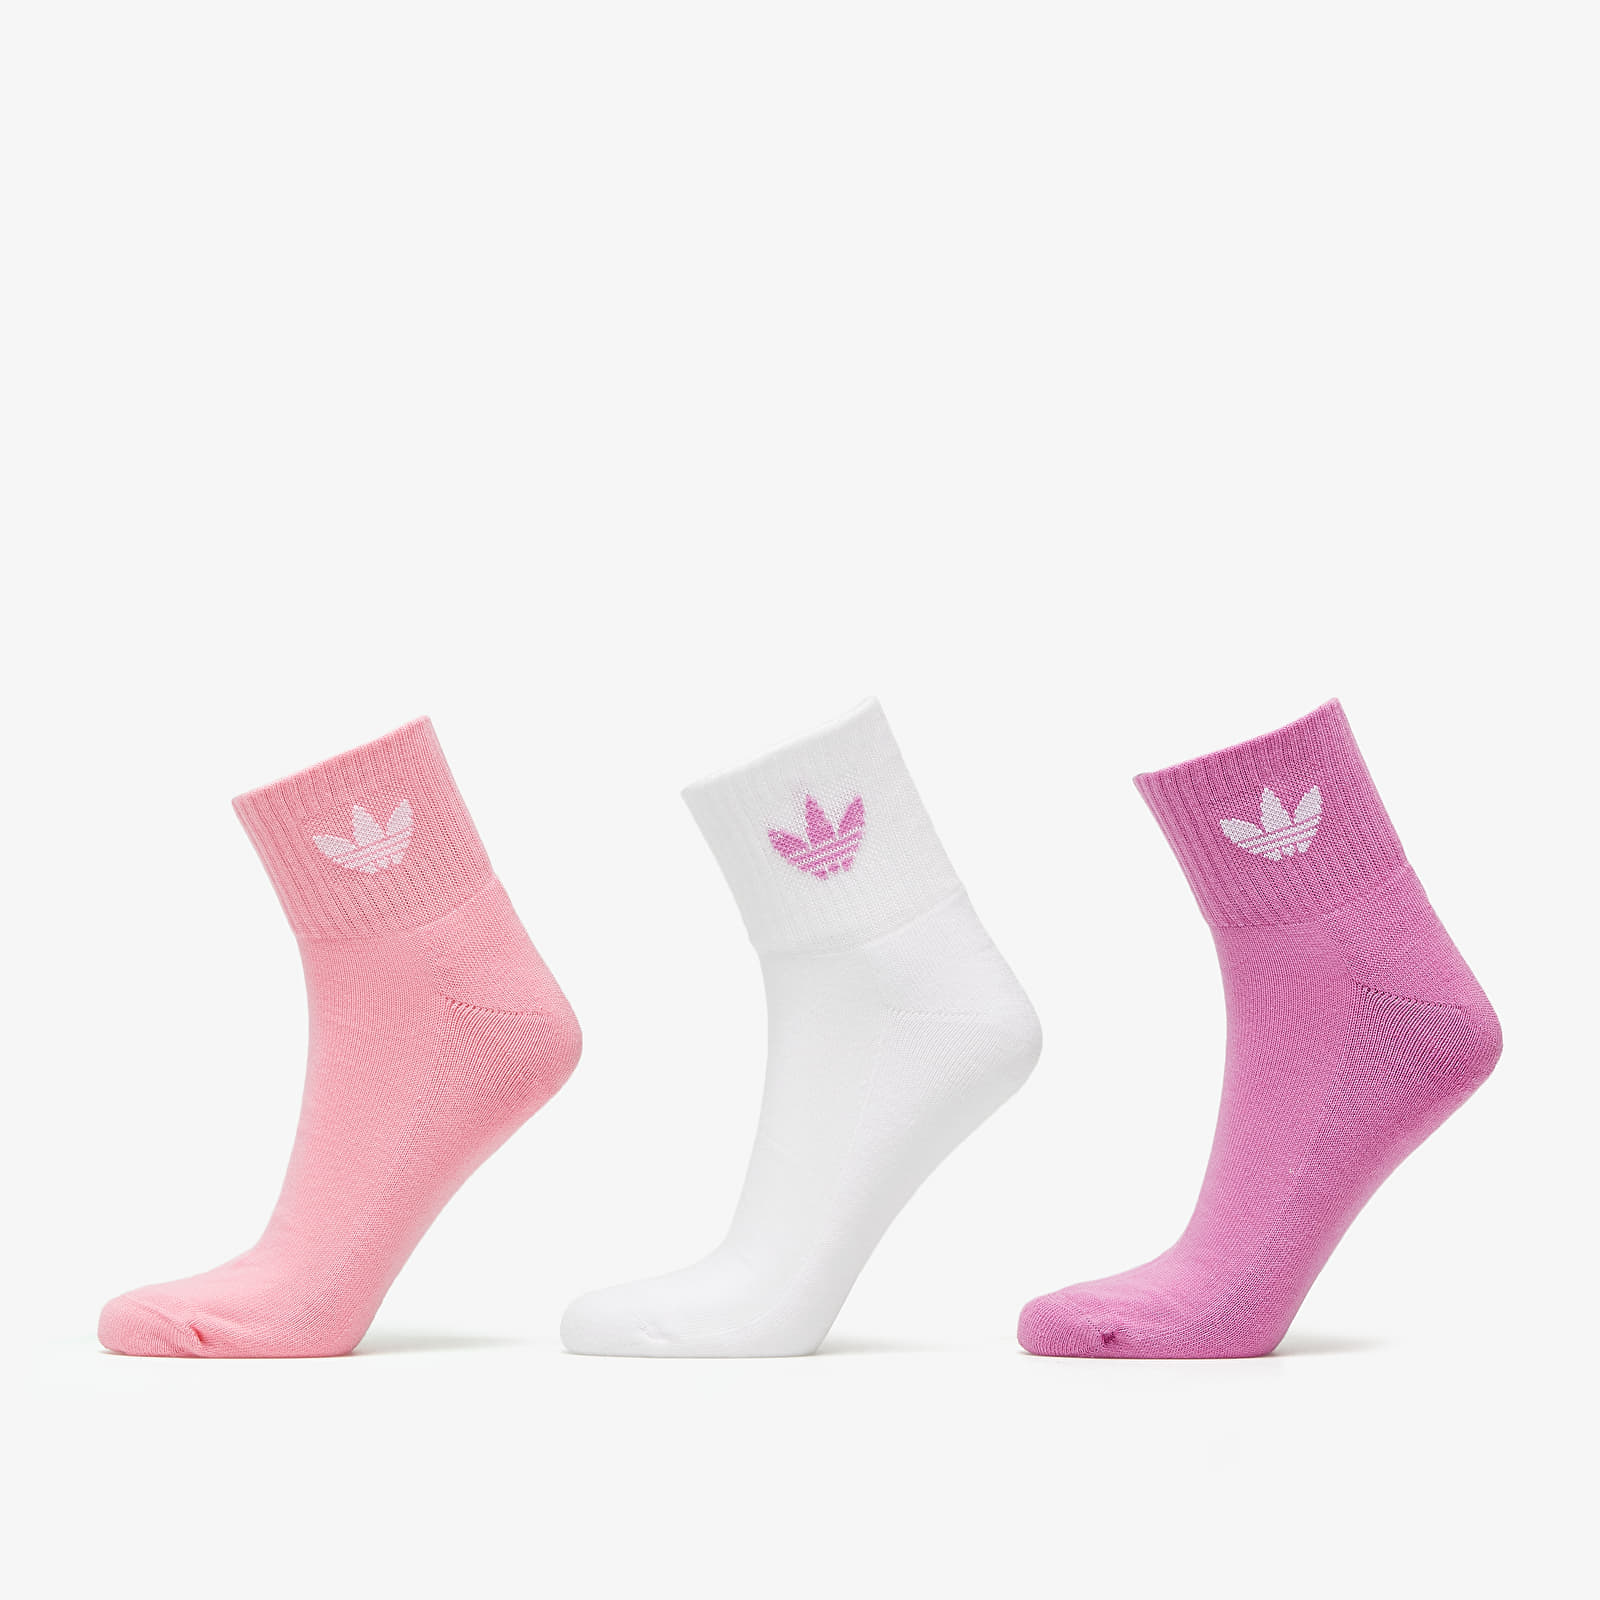 Socks adidas Mid Ankle Crew Socks 3-Pack Multicolor